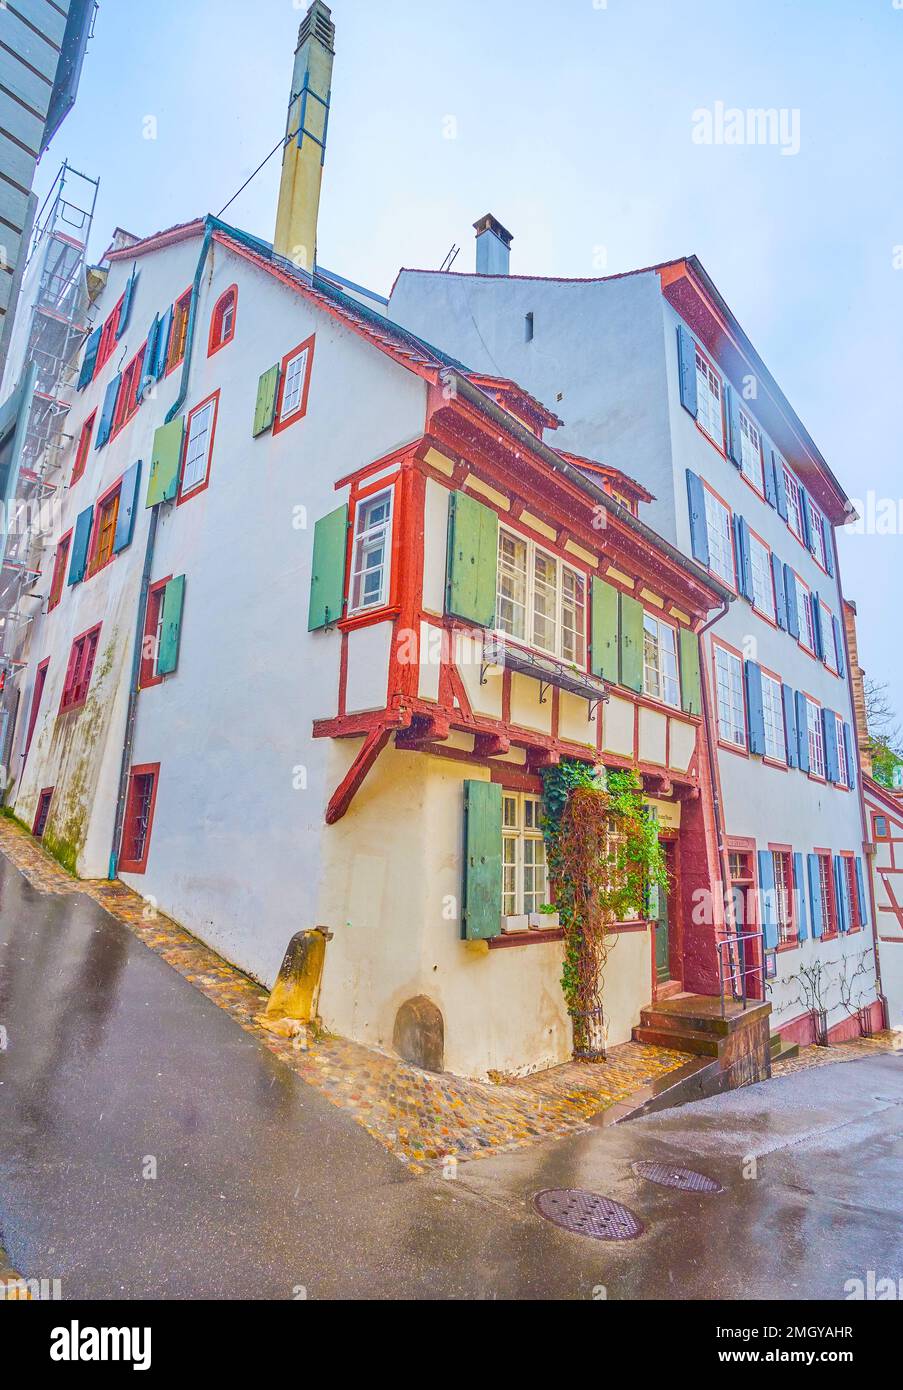 Mittelalterlicher Teil der Stadt Basel mit authentischen Schweizer Fachwerkhäusern in der Rheinsprung Straße, Schweiz Stockfoto